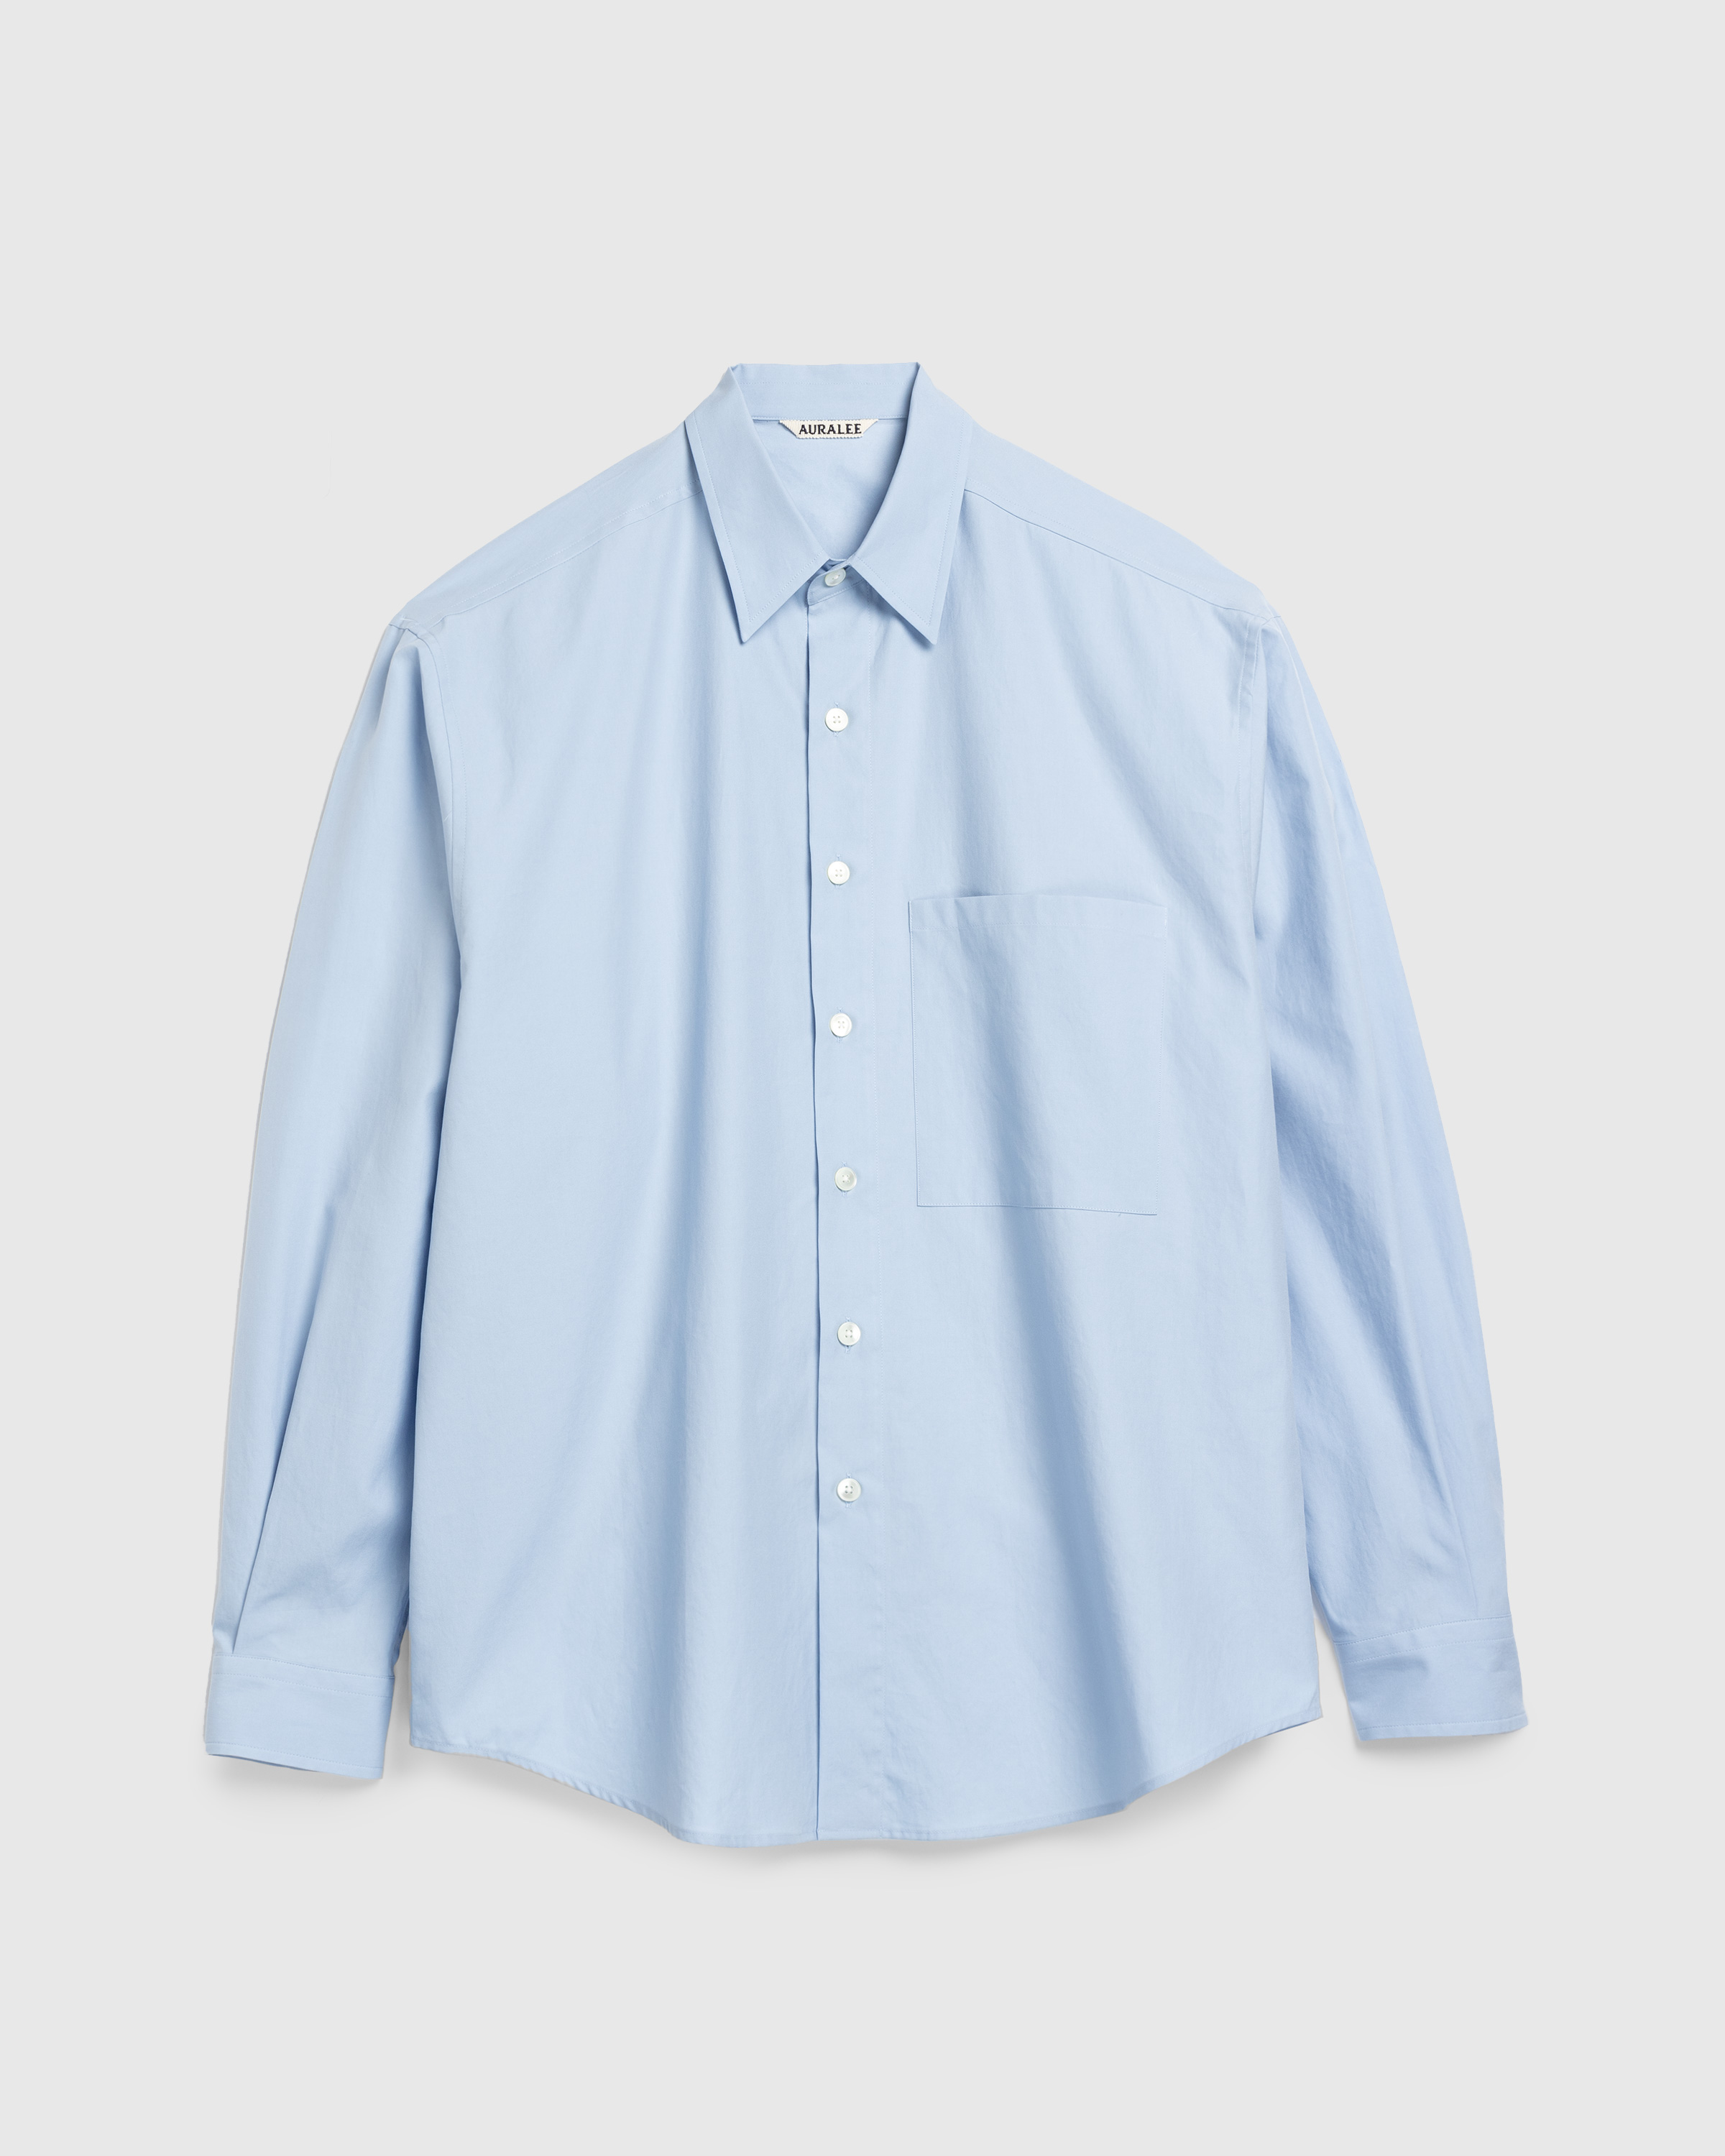 Auralee – Washed Finx Twill Big Shirt Sax Blue | Highsnobiety Shop